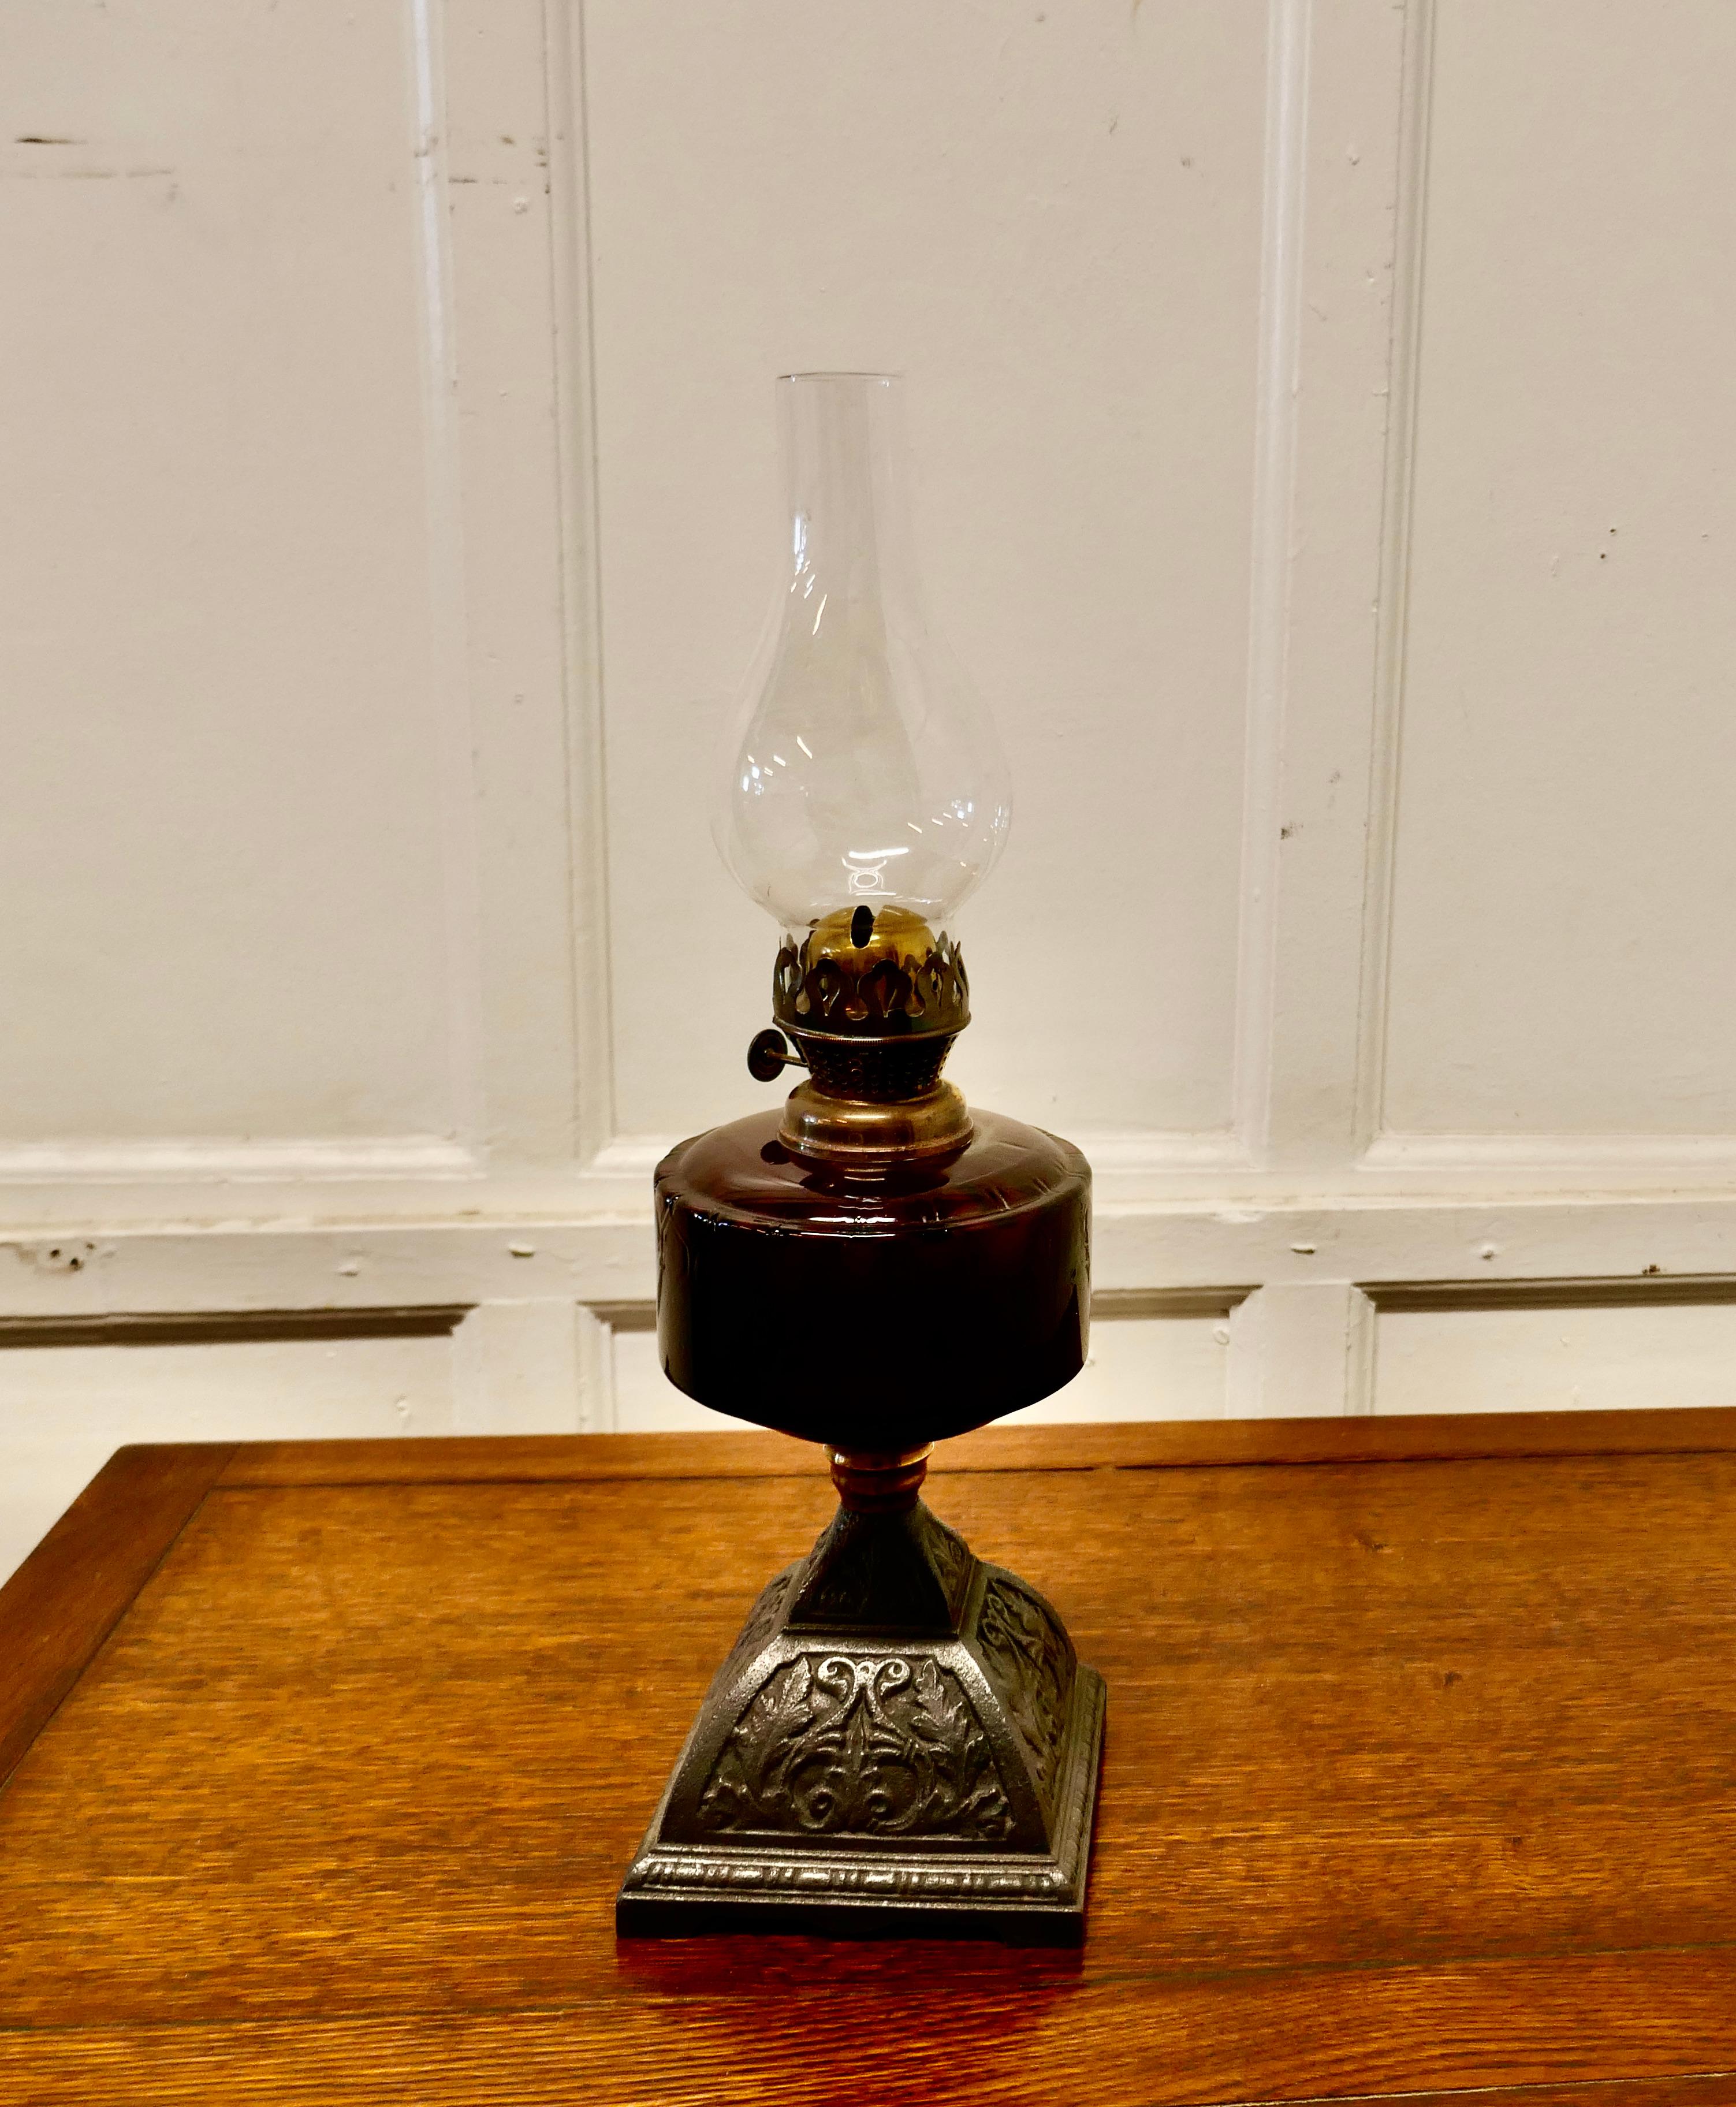 Lampe à huile en verre canneberge sur socle en fer décoratif

Une belle lampe en verre sur une base en fer, la lampe est une belle pièce, elle a une cheminée en verre et un brûleur mais je ne peux pas garantir si elle est en état de fonctionnement